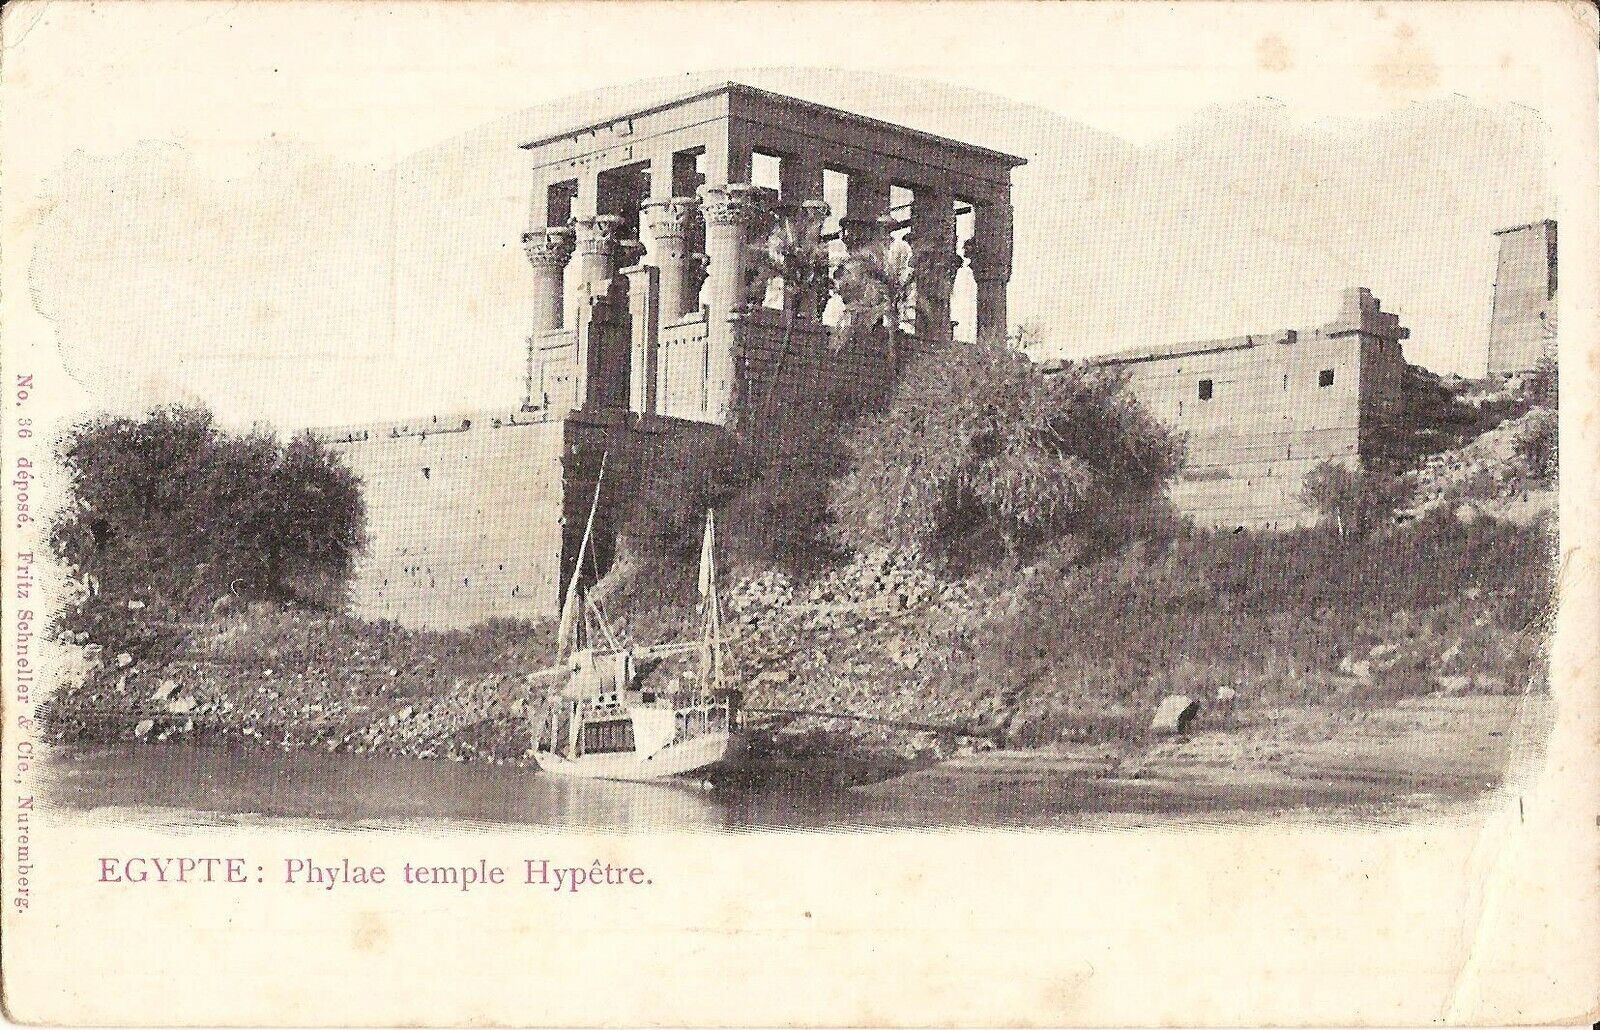 Phylae Temple Hypetre - EGYPT - felucca, Aswan Dam, Agilkia Island